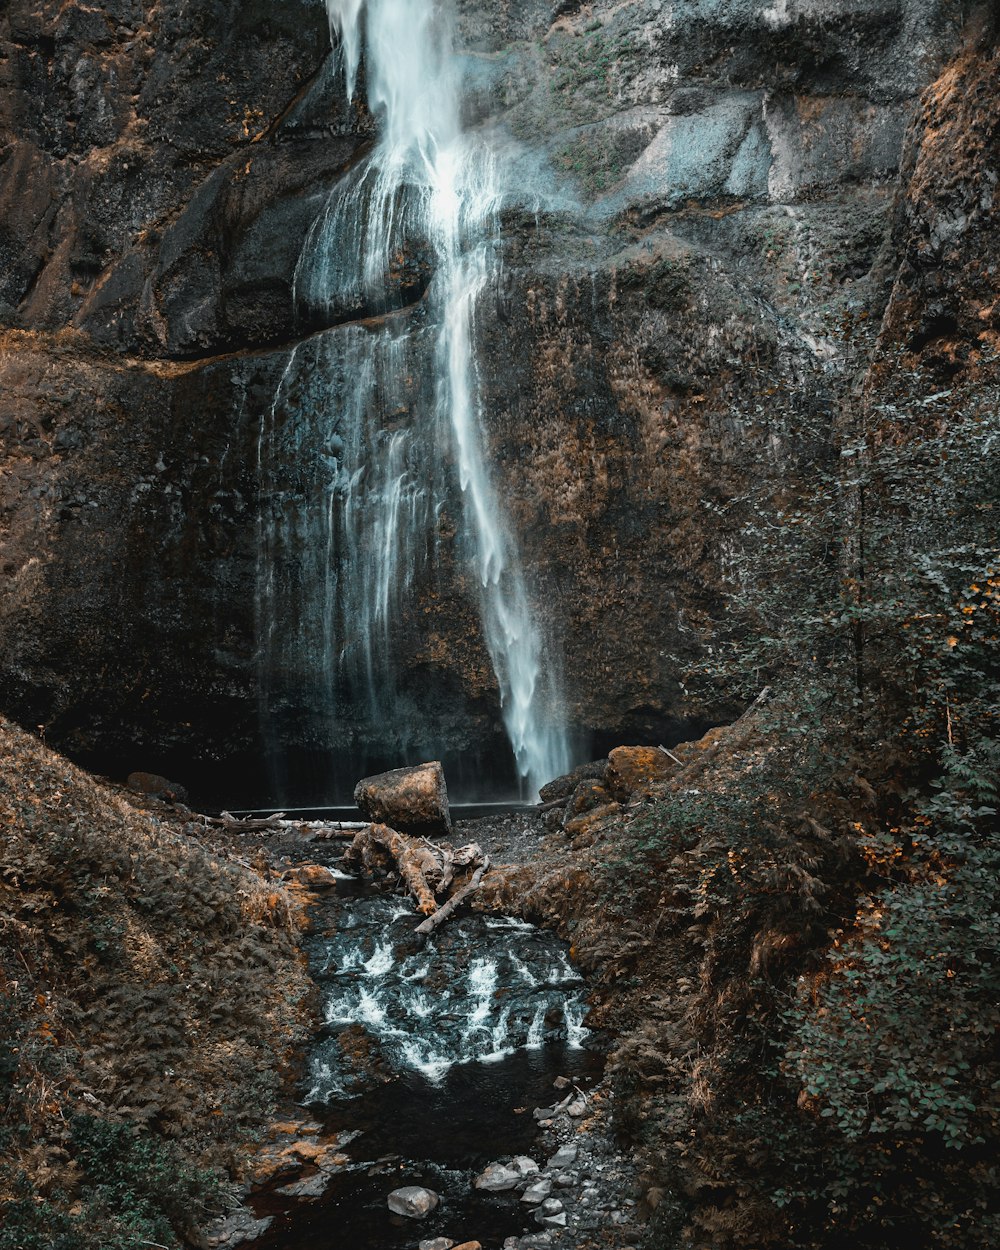 Une cascade est vue au milieu d’une zone rocheuse